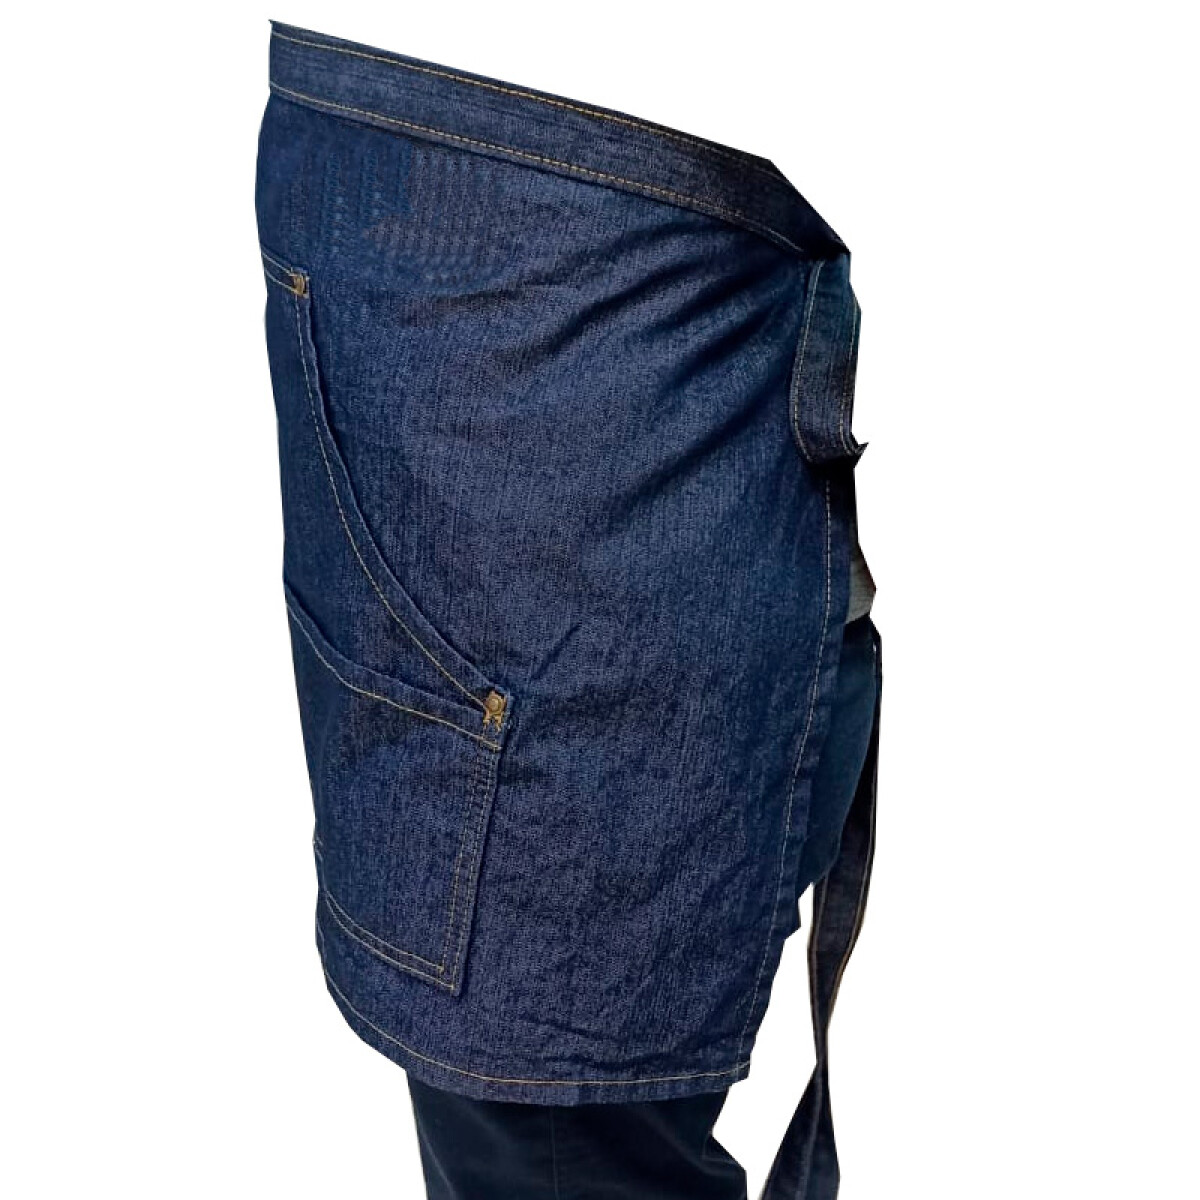 Delantal Corto Jeans 4 Bolsillos Varios Colores - Azul 